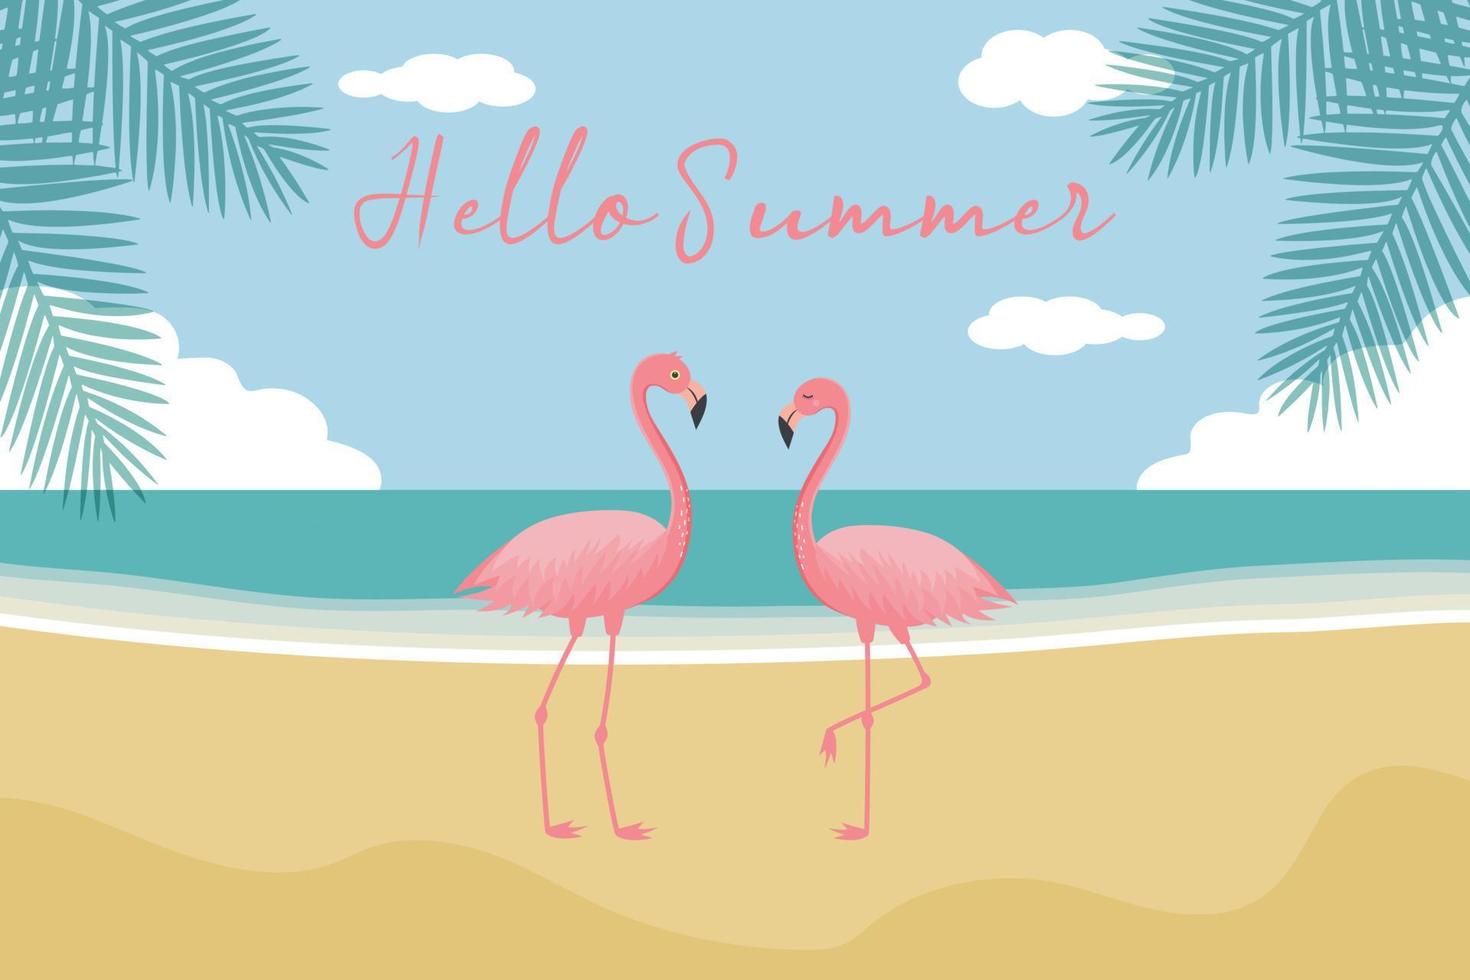 bonjour fond d'été. flamants roses, panorama sur mer et plage, palmiers. vecteur